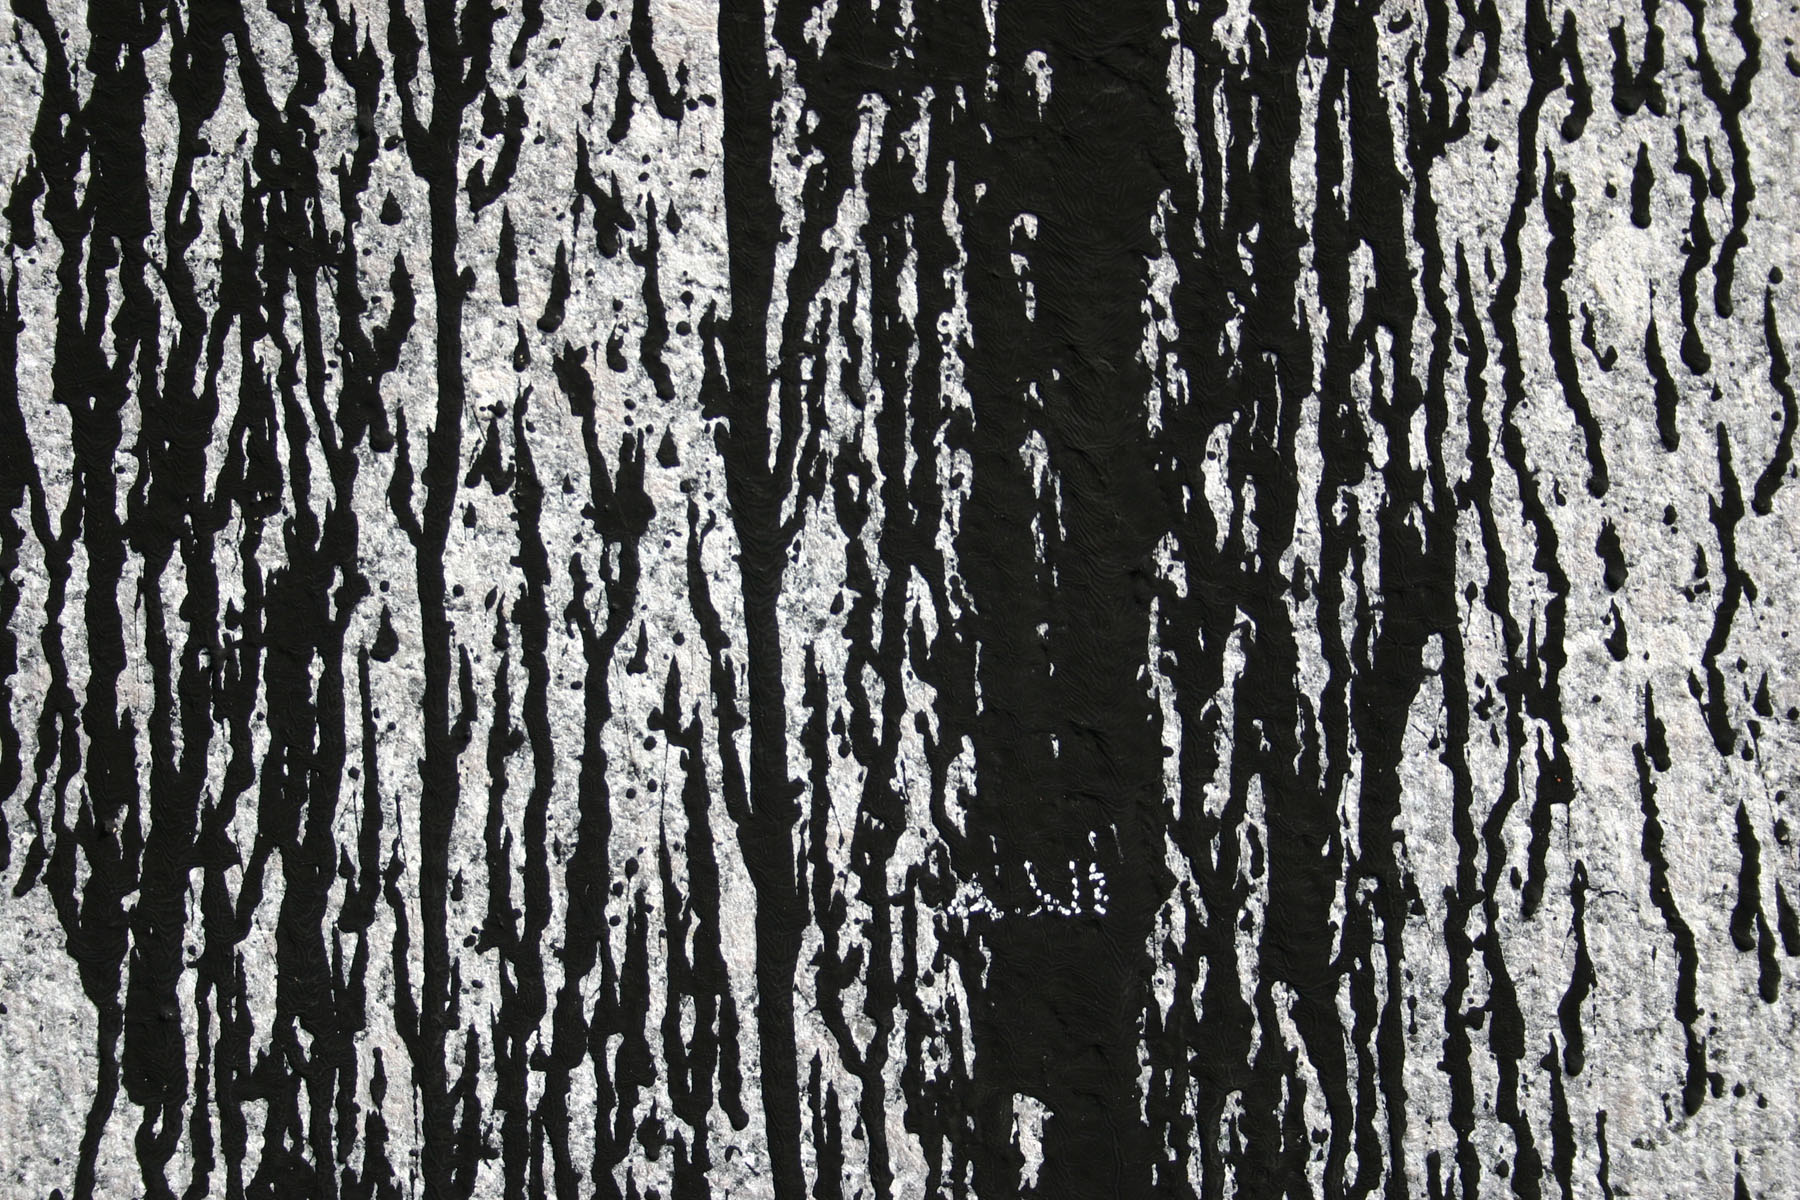 Black & white texture photo